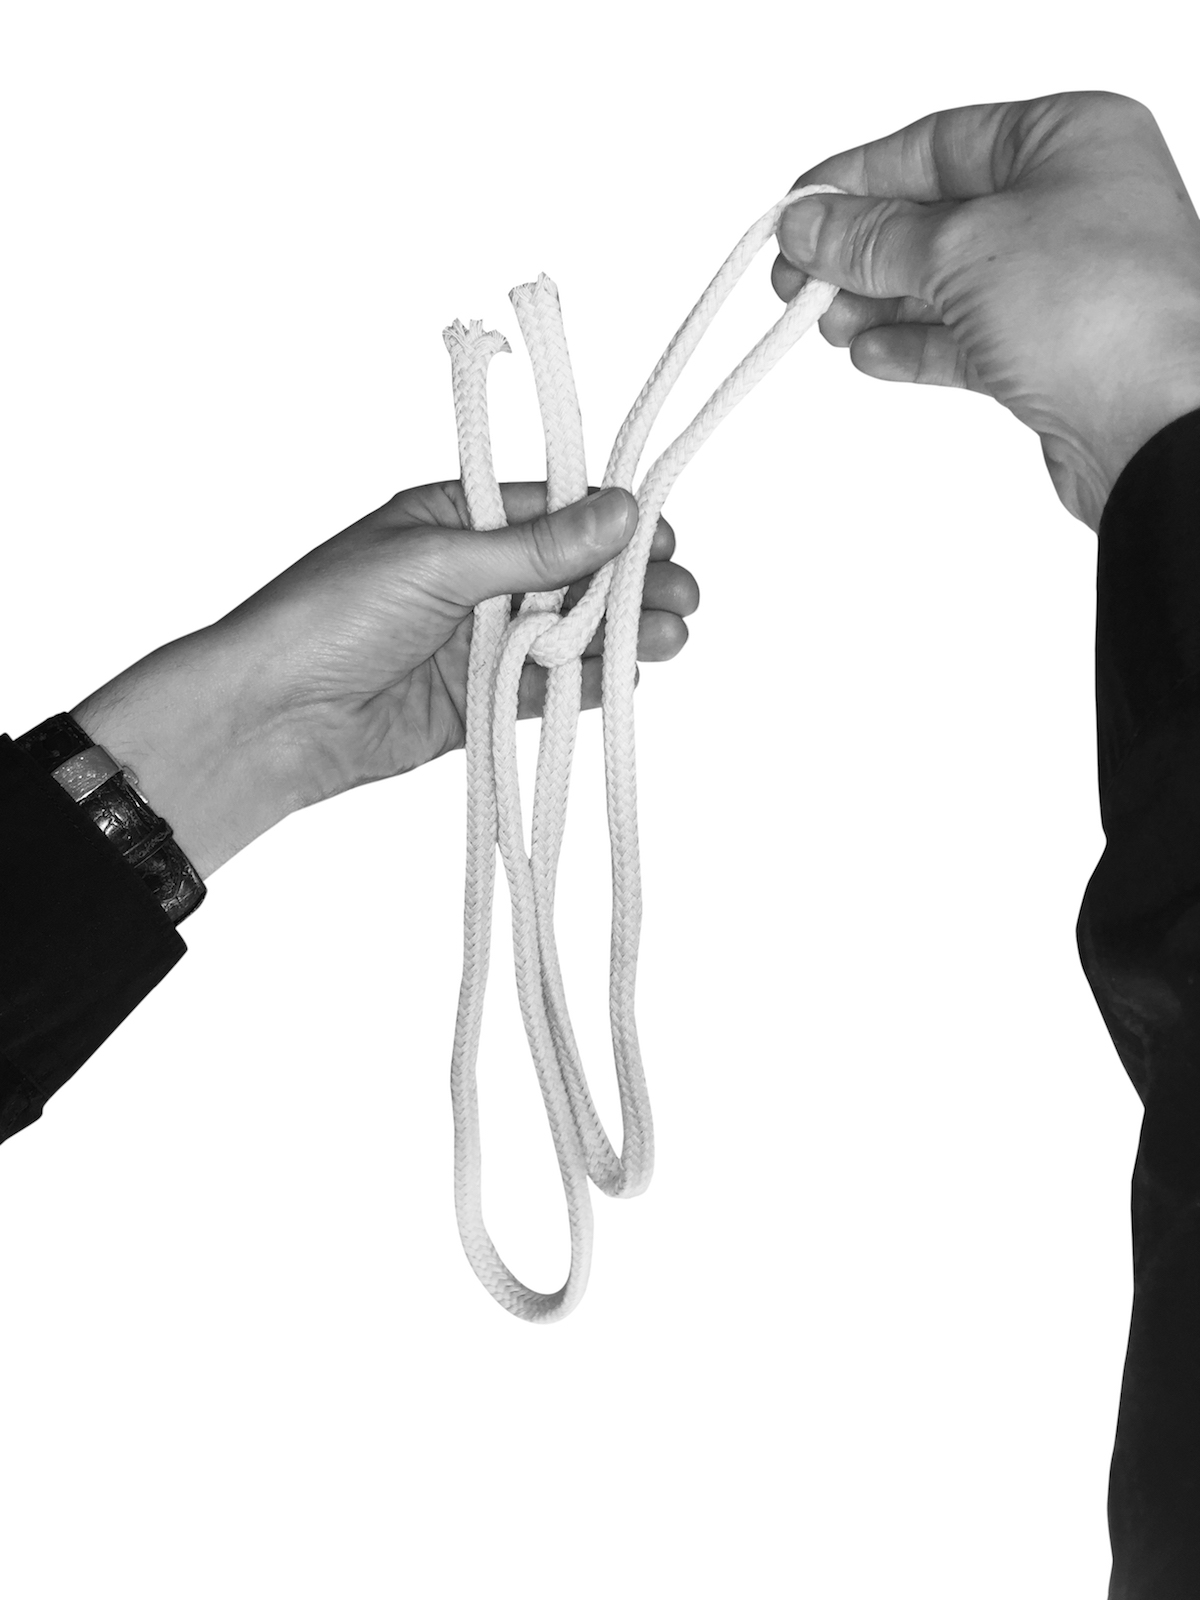 Cut and Restored Rope - Magic Trick 